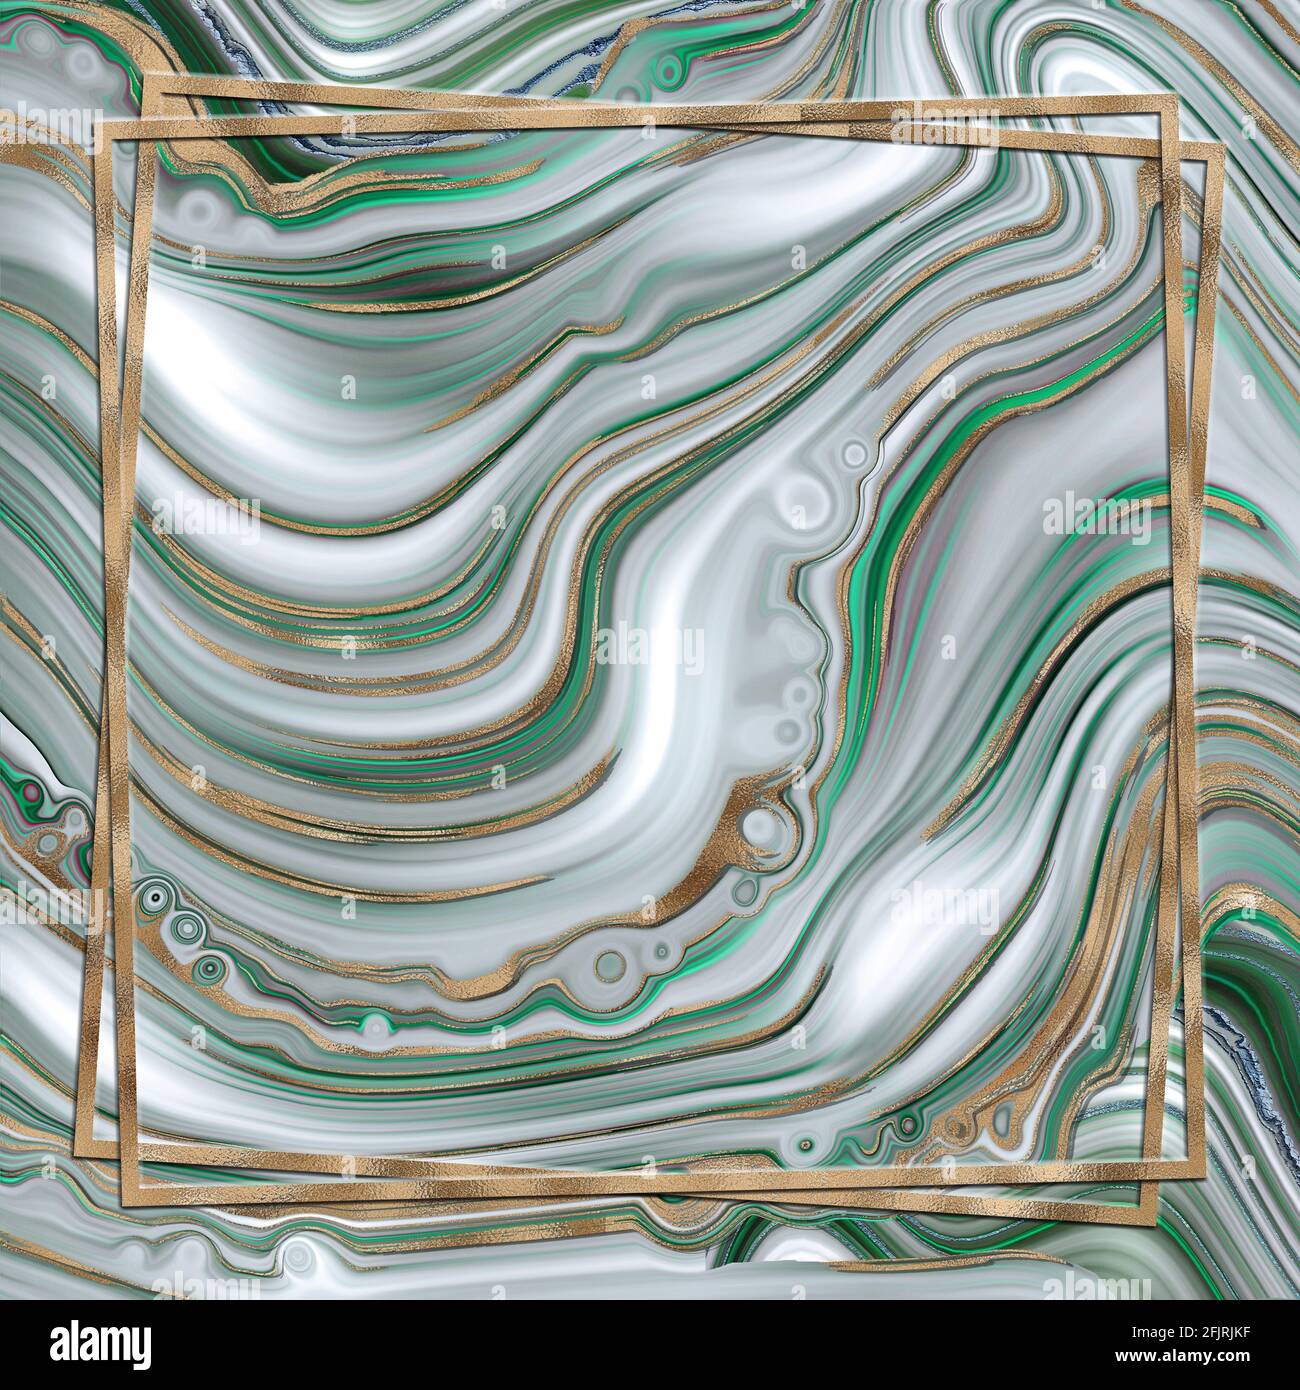 Abstrakte trendige grüne Hintergrund Vorlage. Flüssiges, abstraktes Achat-Design aus Marmor mit goldfarbener Wellenstruktur. Goldrahmen.Cover, Einladung, Banner, Plakat, Stockfoto